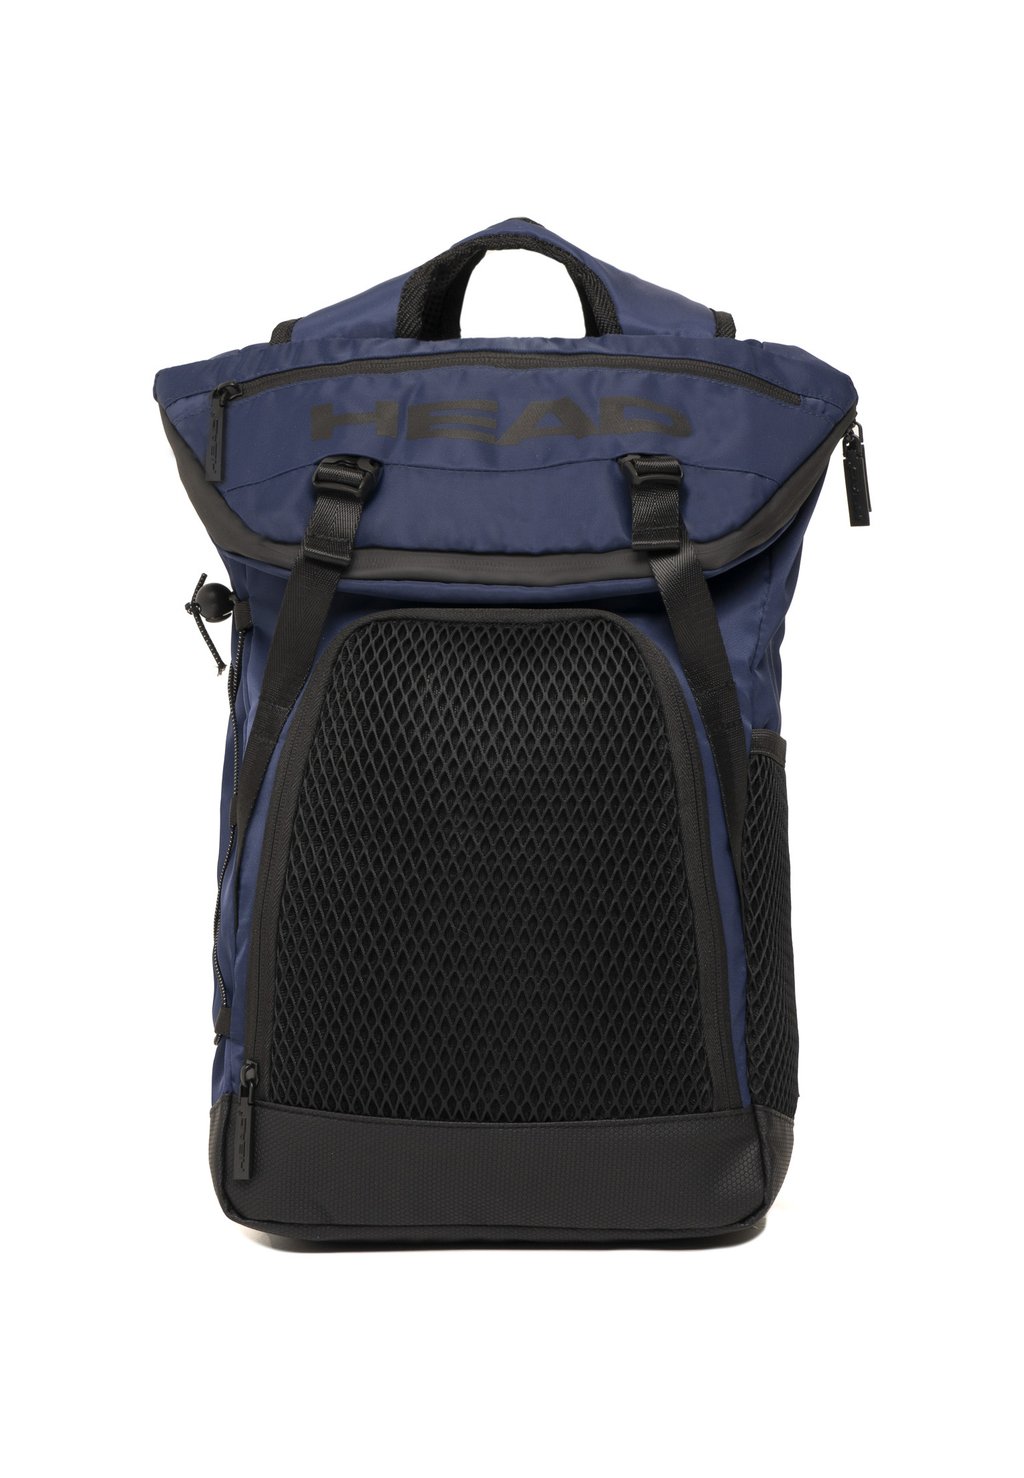 Рюкзак для путешествий Head Net Vertical, темно-синий рюкзак head elite серый оранжевый 283662 gror